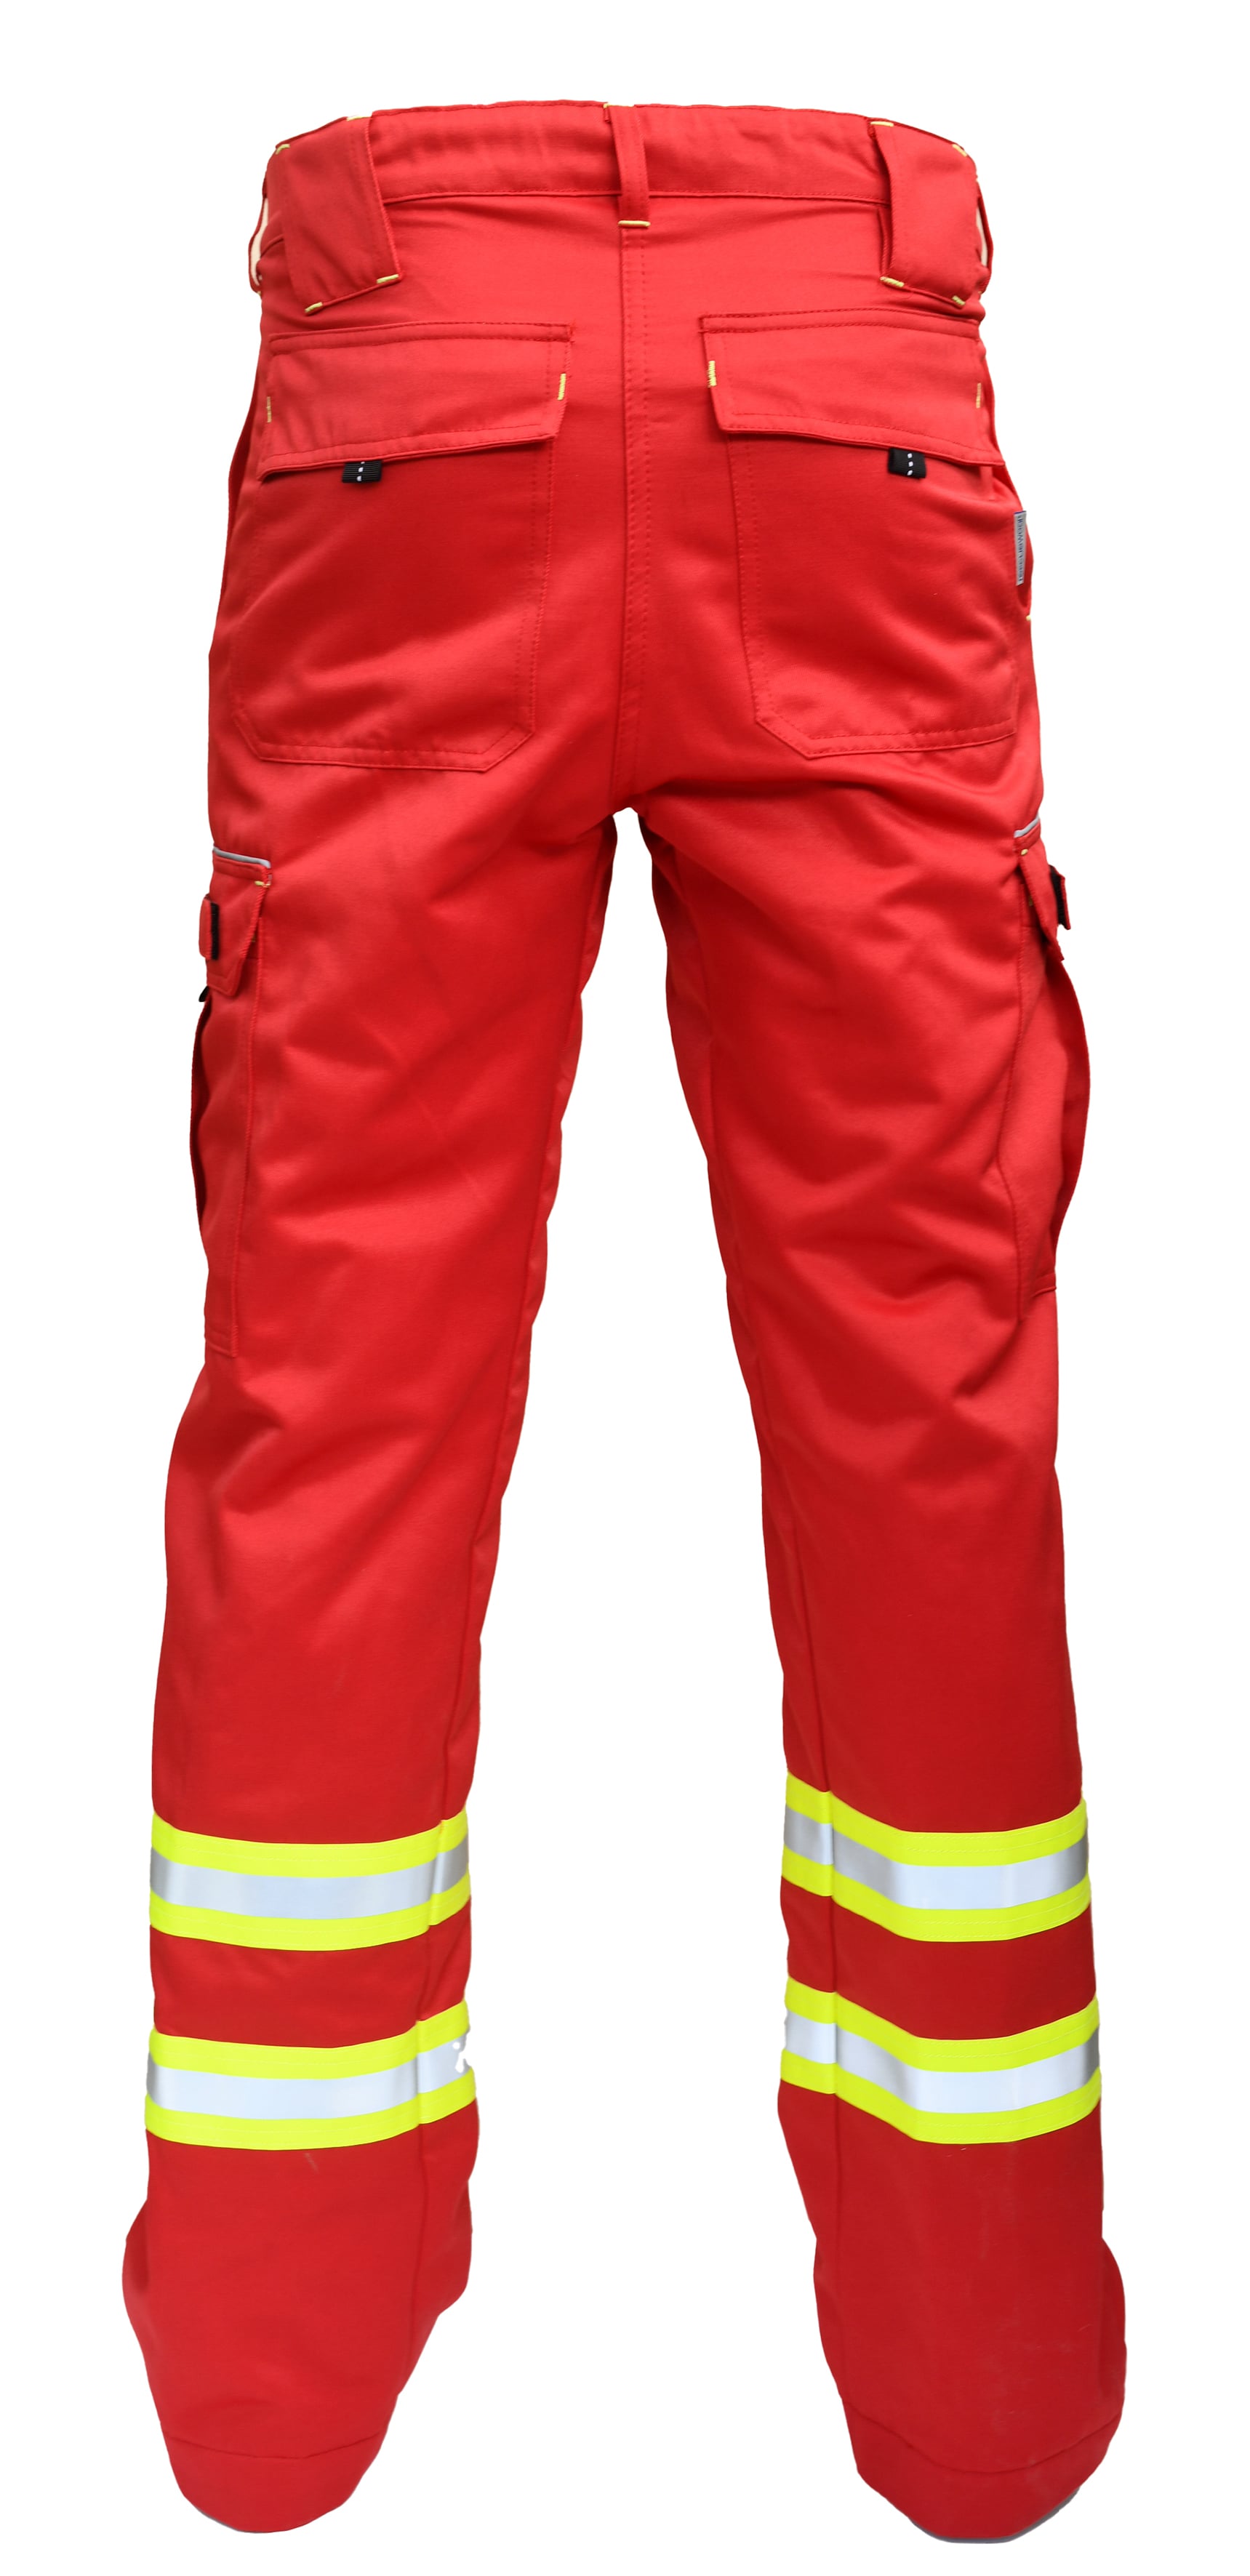 Rescuewear Unisex Hose Wasserrettung mit HT-Liner Rot - 48